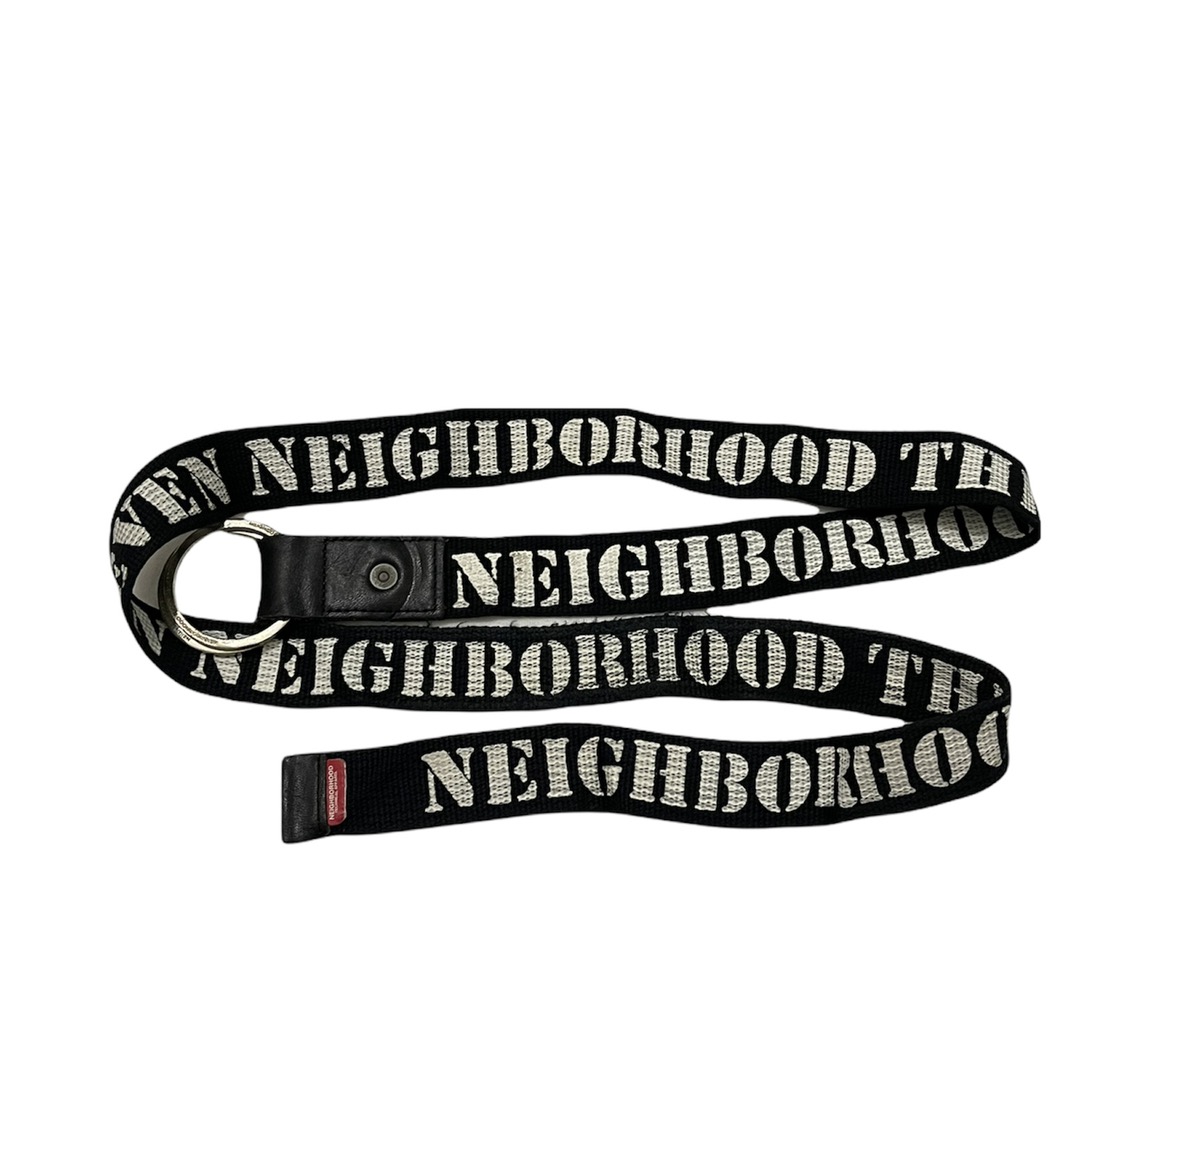 Neighborhood belt nbhd the magnificent seven belt - 1